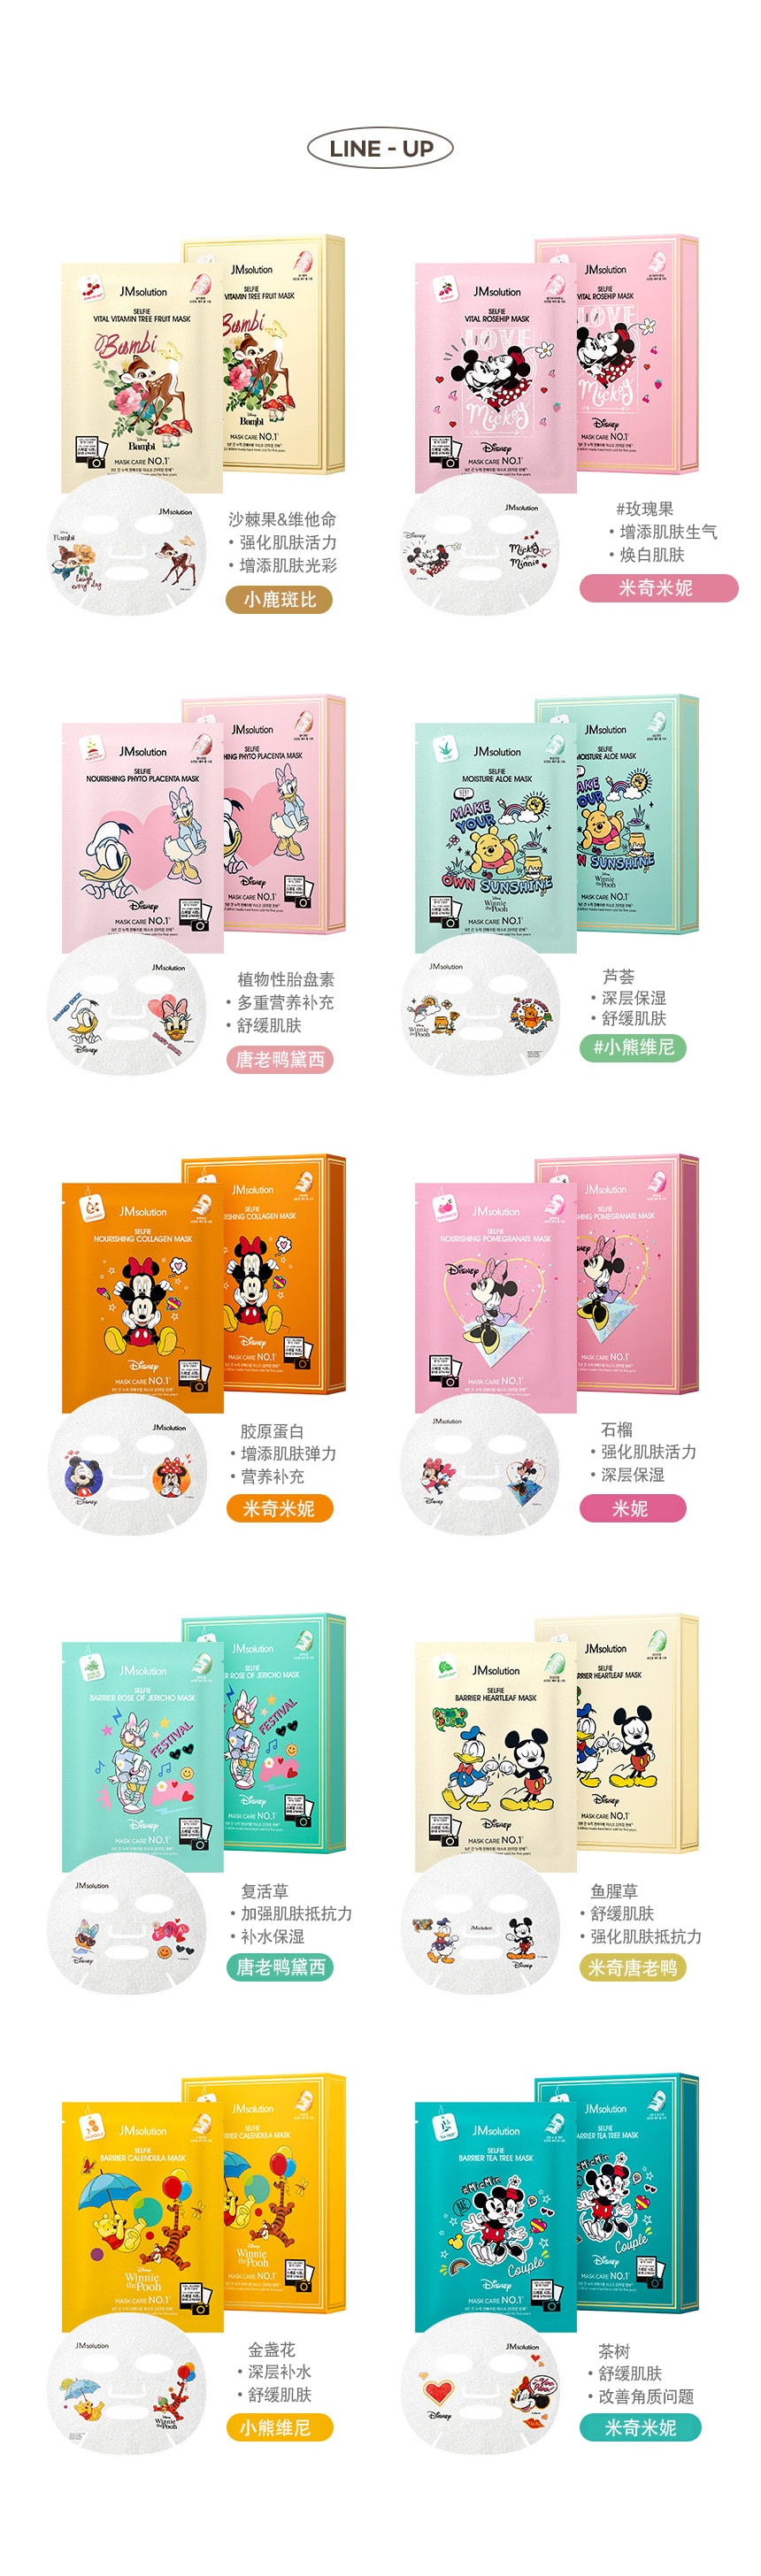 韓國 JMsolution 【迪士尼聯名款】限量卡通面膜系列 #米妮-紅石榴 10片/1 盒